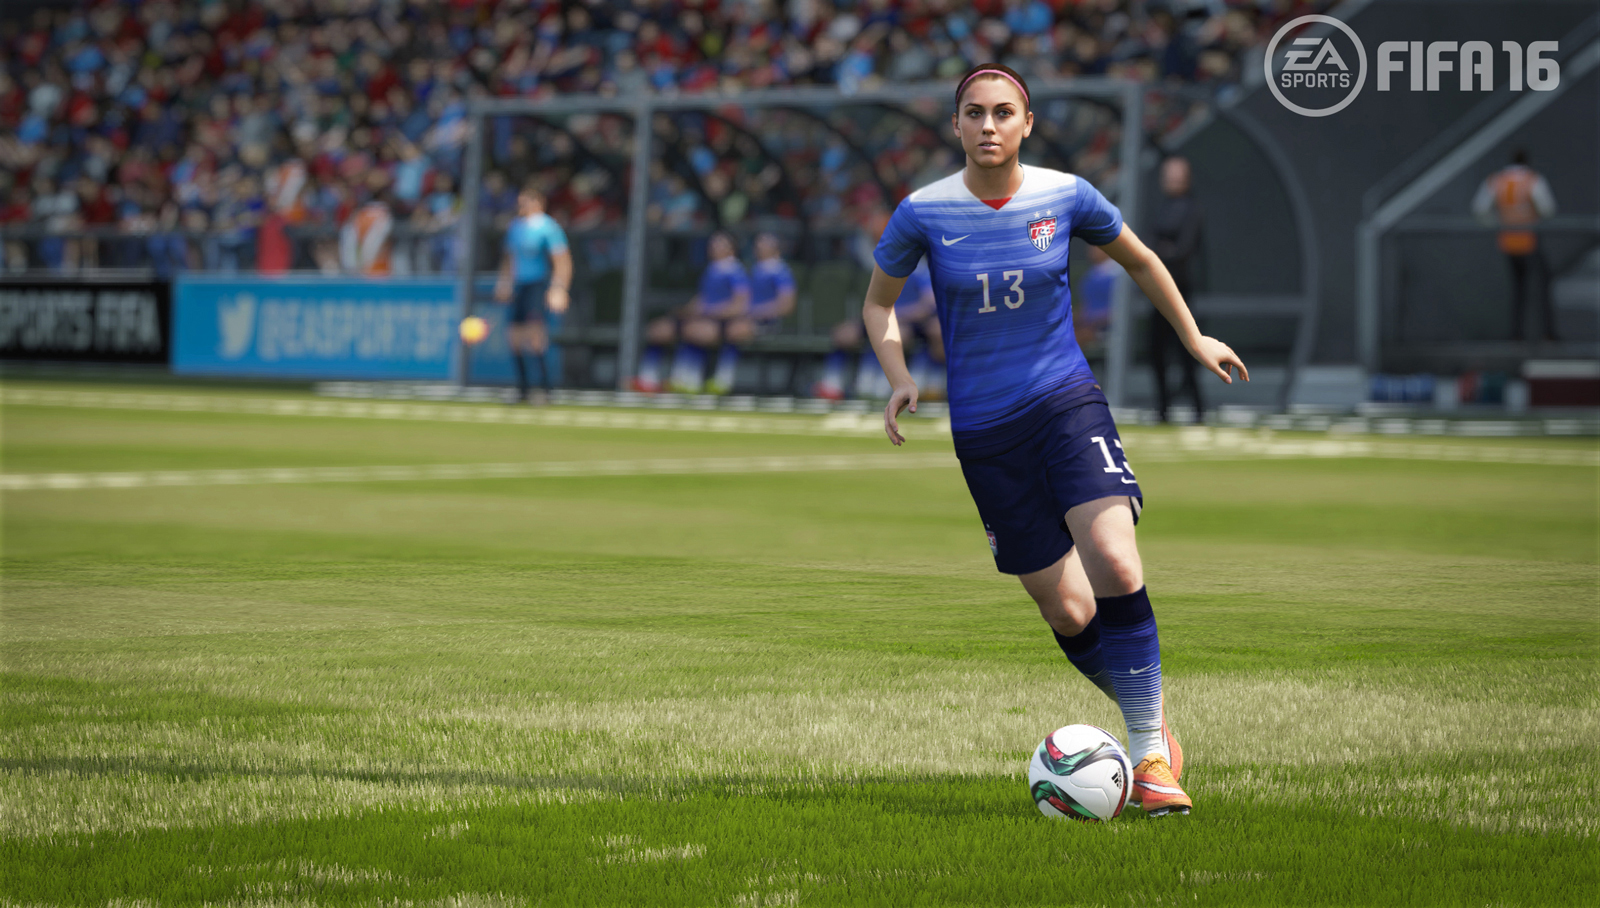 EA Sports FC 24 in sconto su Instant Gaming! -29% - SpazioGames